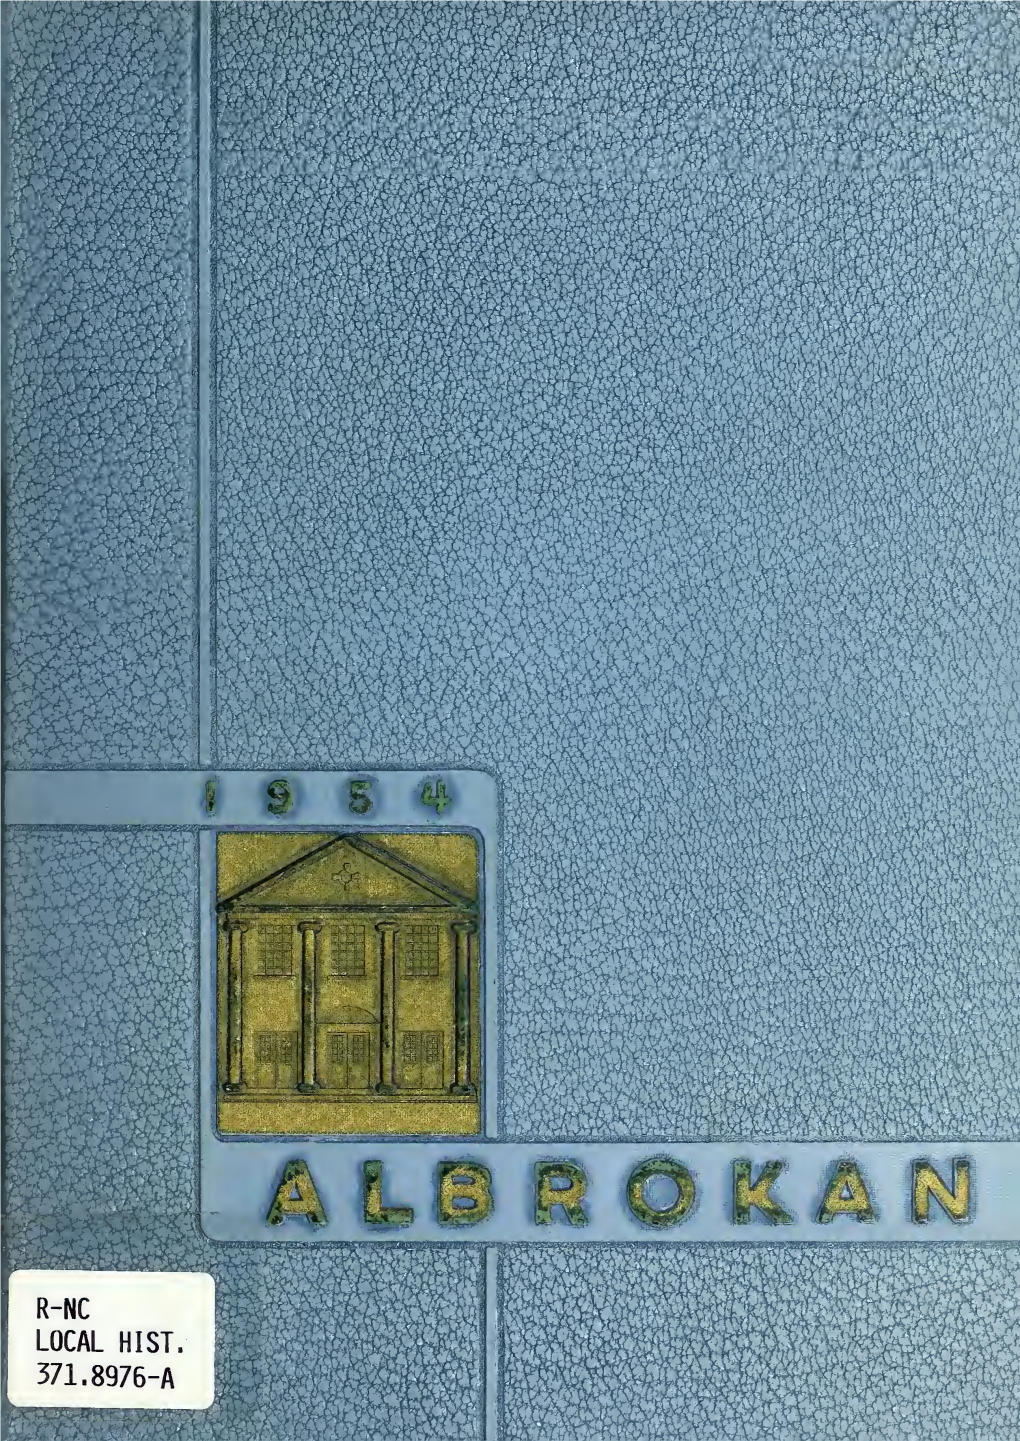 Albrokan [1954]